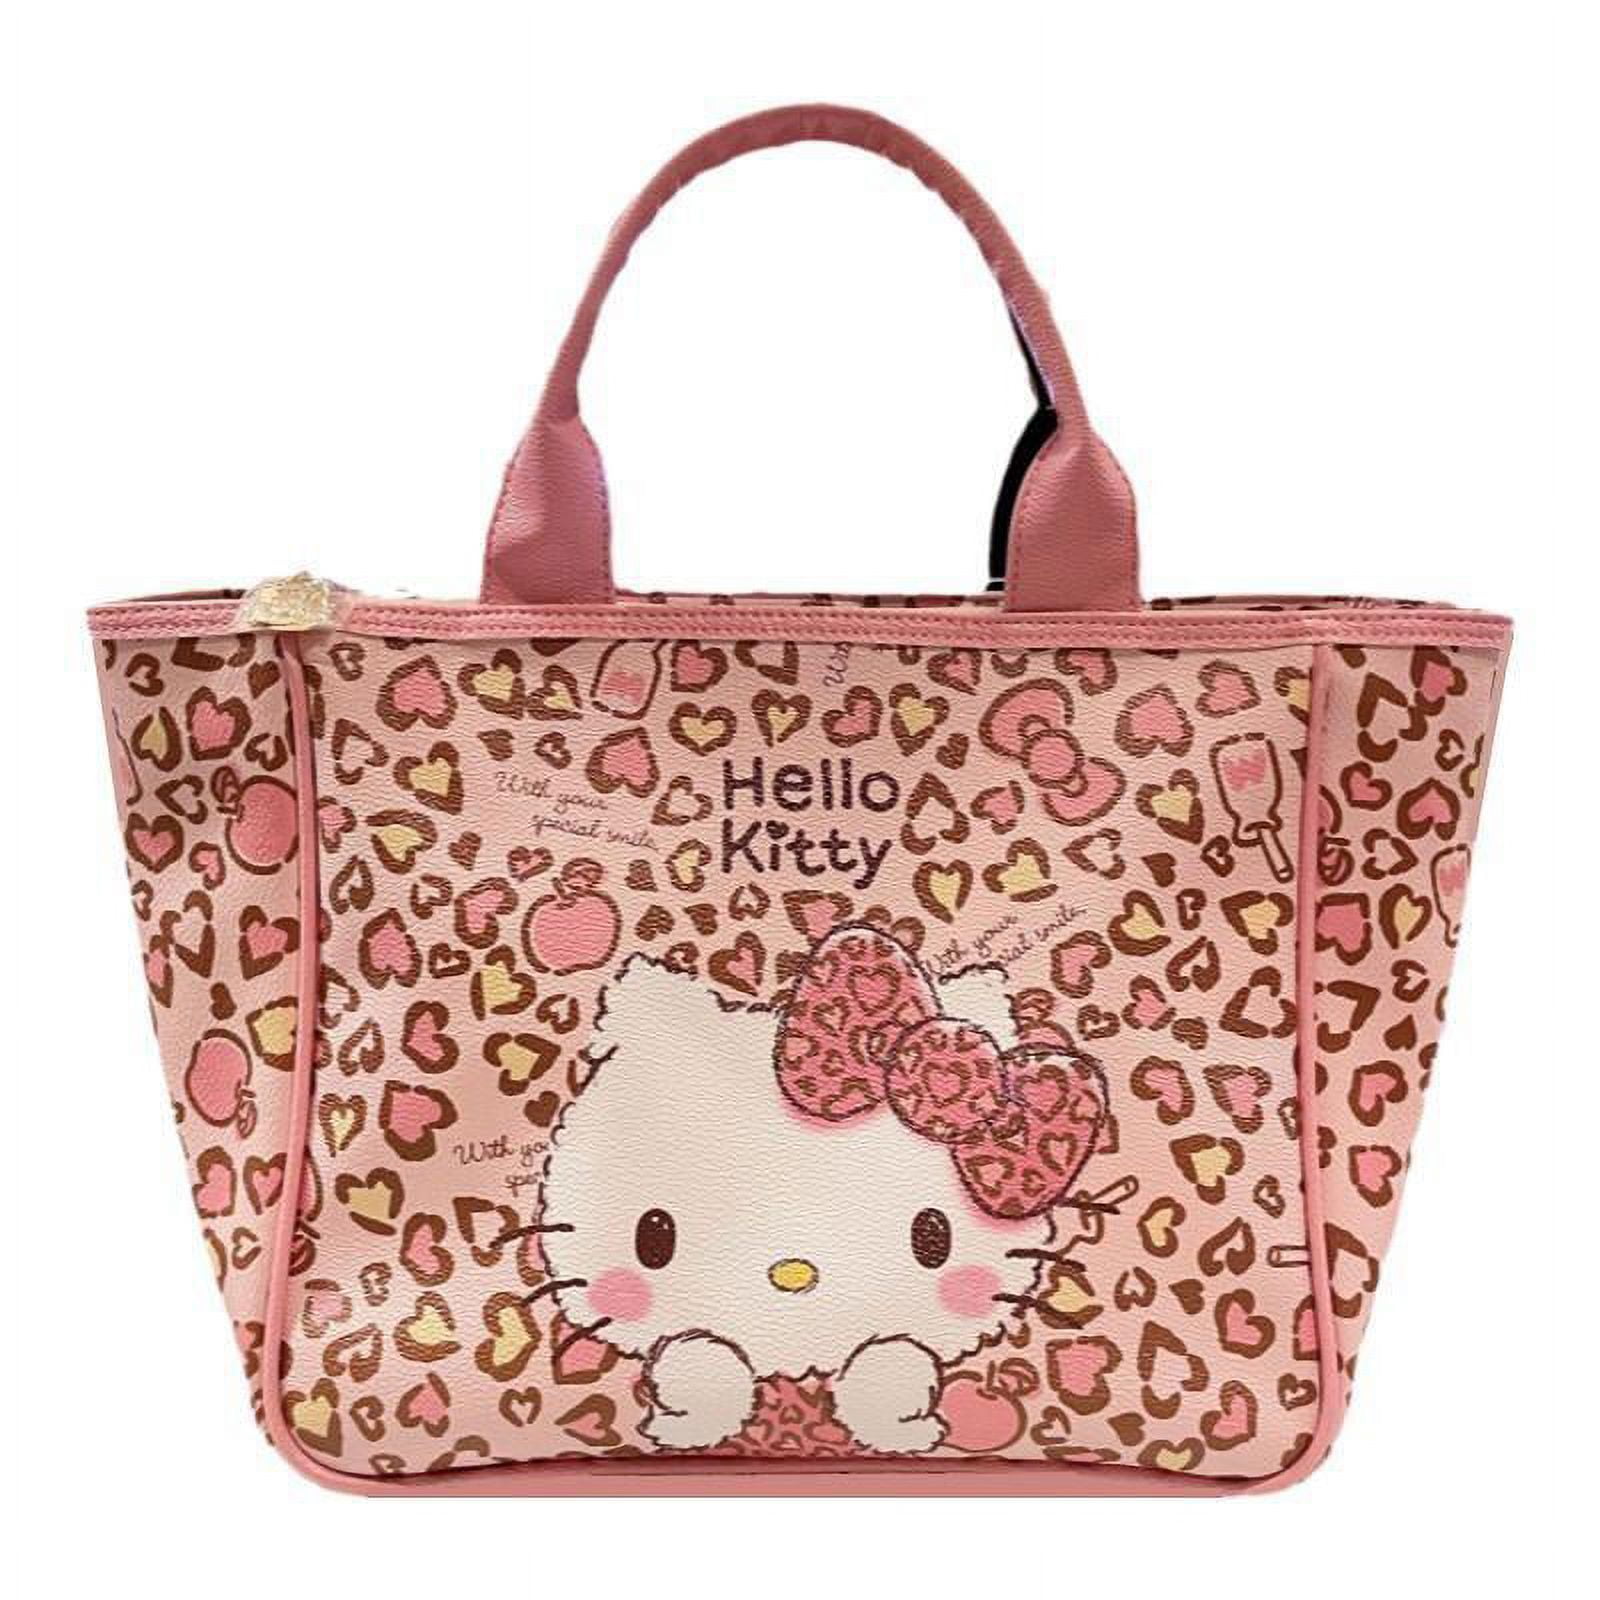 Louis Vuitton Hello Kitty Pinky Luxury Handbag | Hello kitty handbags,  Small handbags, Women handbags